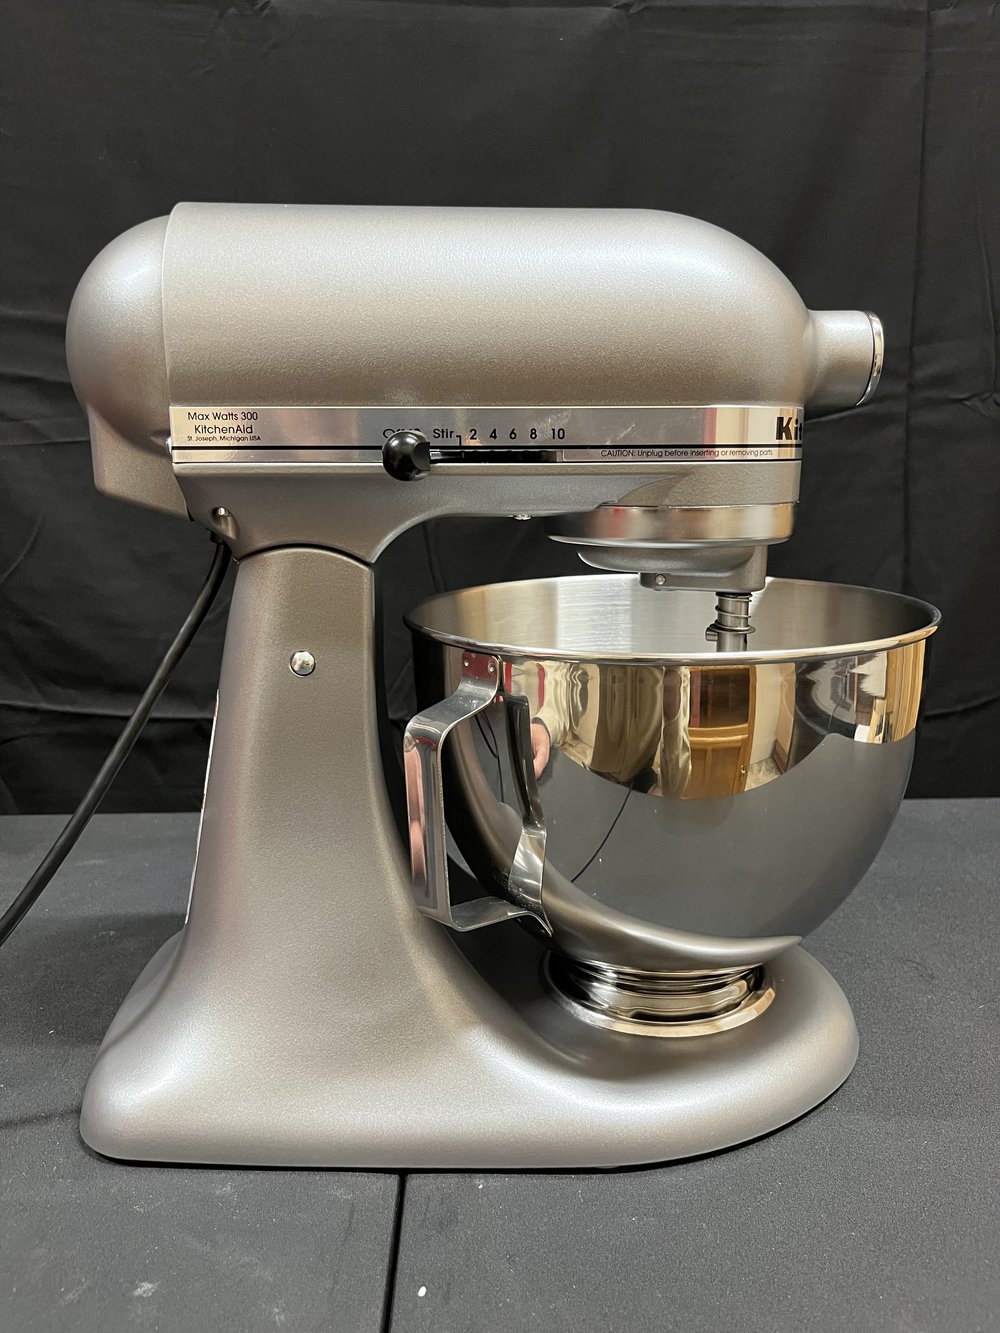 KitchenAid Deluxe 4.5 Quart Tilt-Head Stand Mixer - KSM97SL - NEW NEW